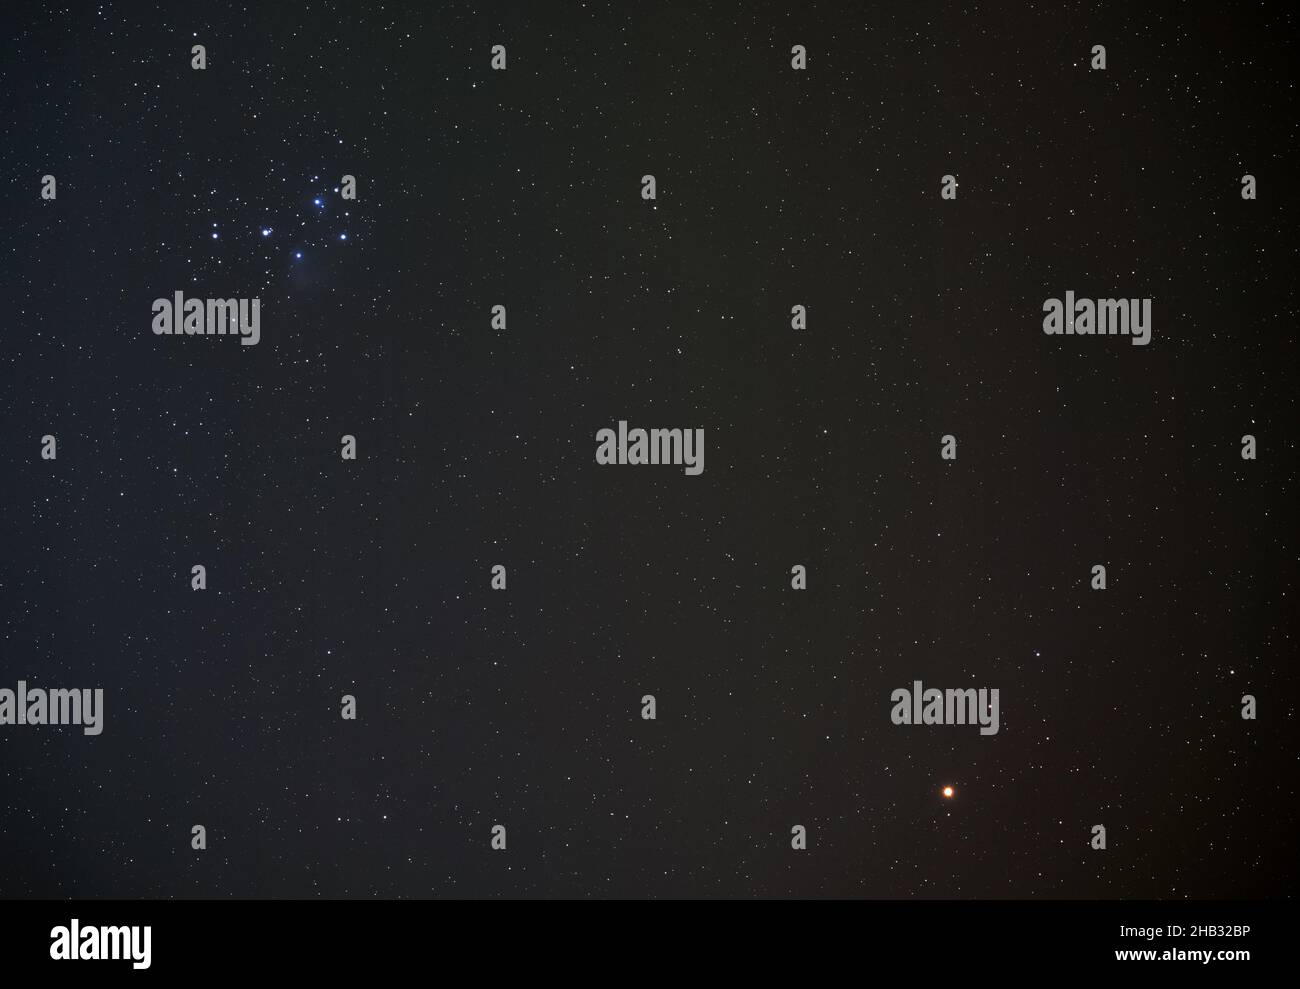 Pléiades (également connu sous le nom de Seven Sisters), groupe d'étoiles ouvert sur le ciel nocturne d'hiver, planète Mars rouge vif dans le coin inférieur droit, photo longue exposition Banque D'Images